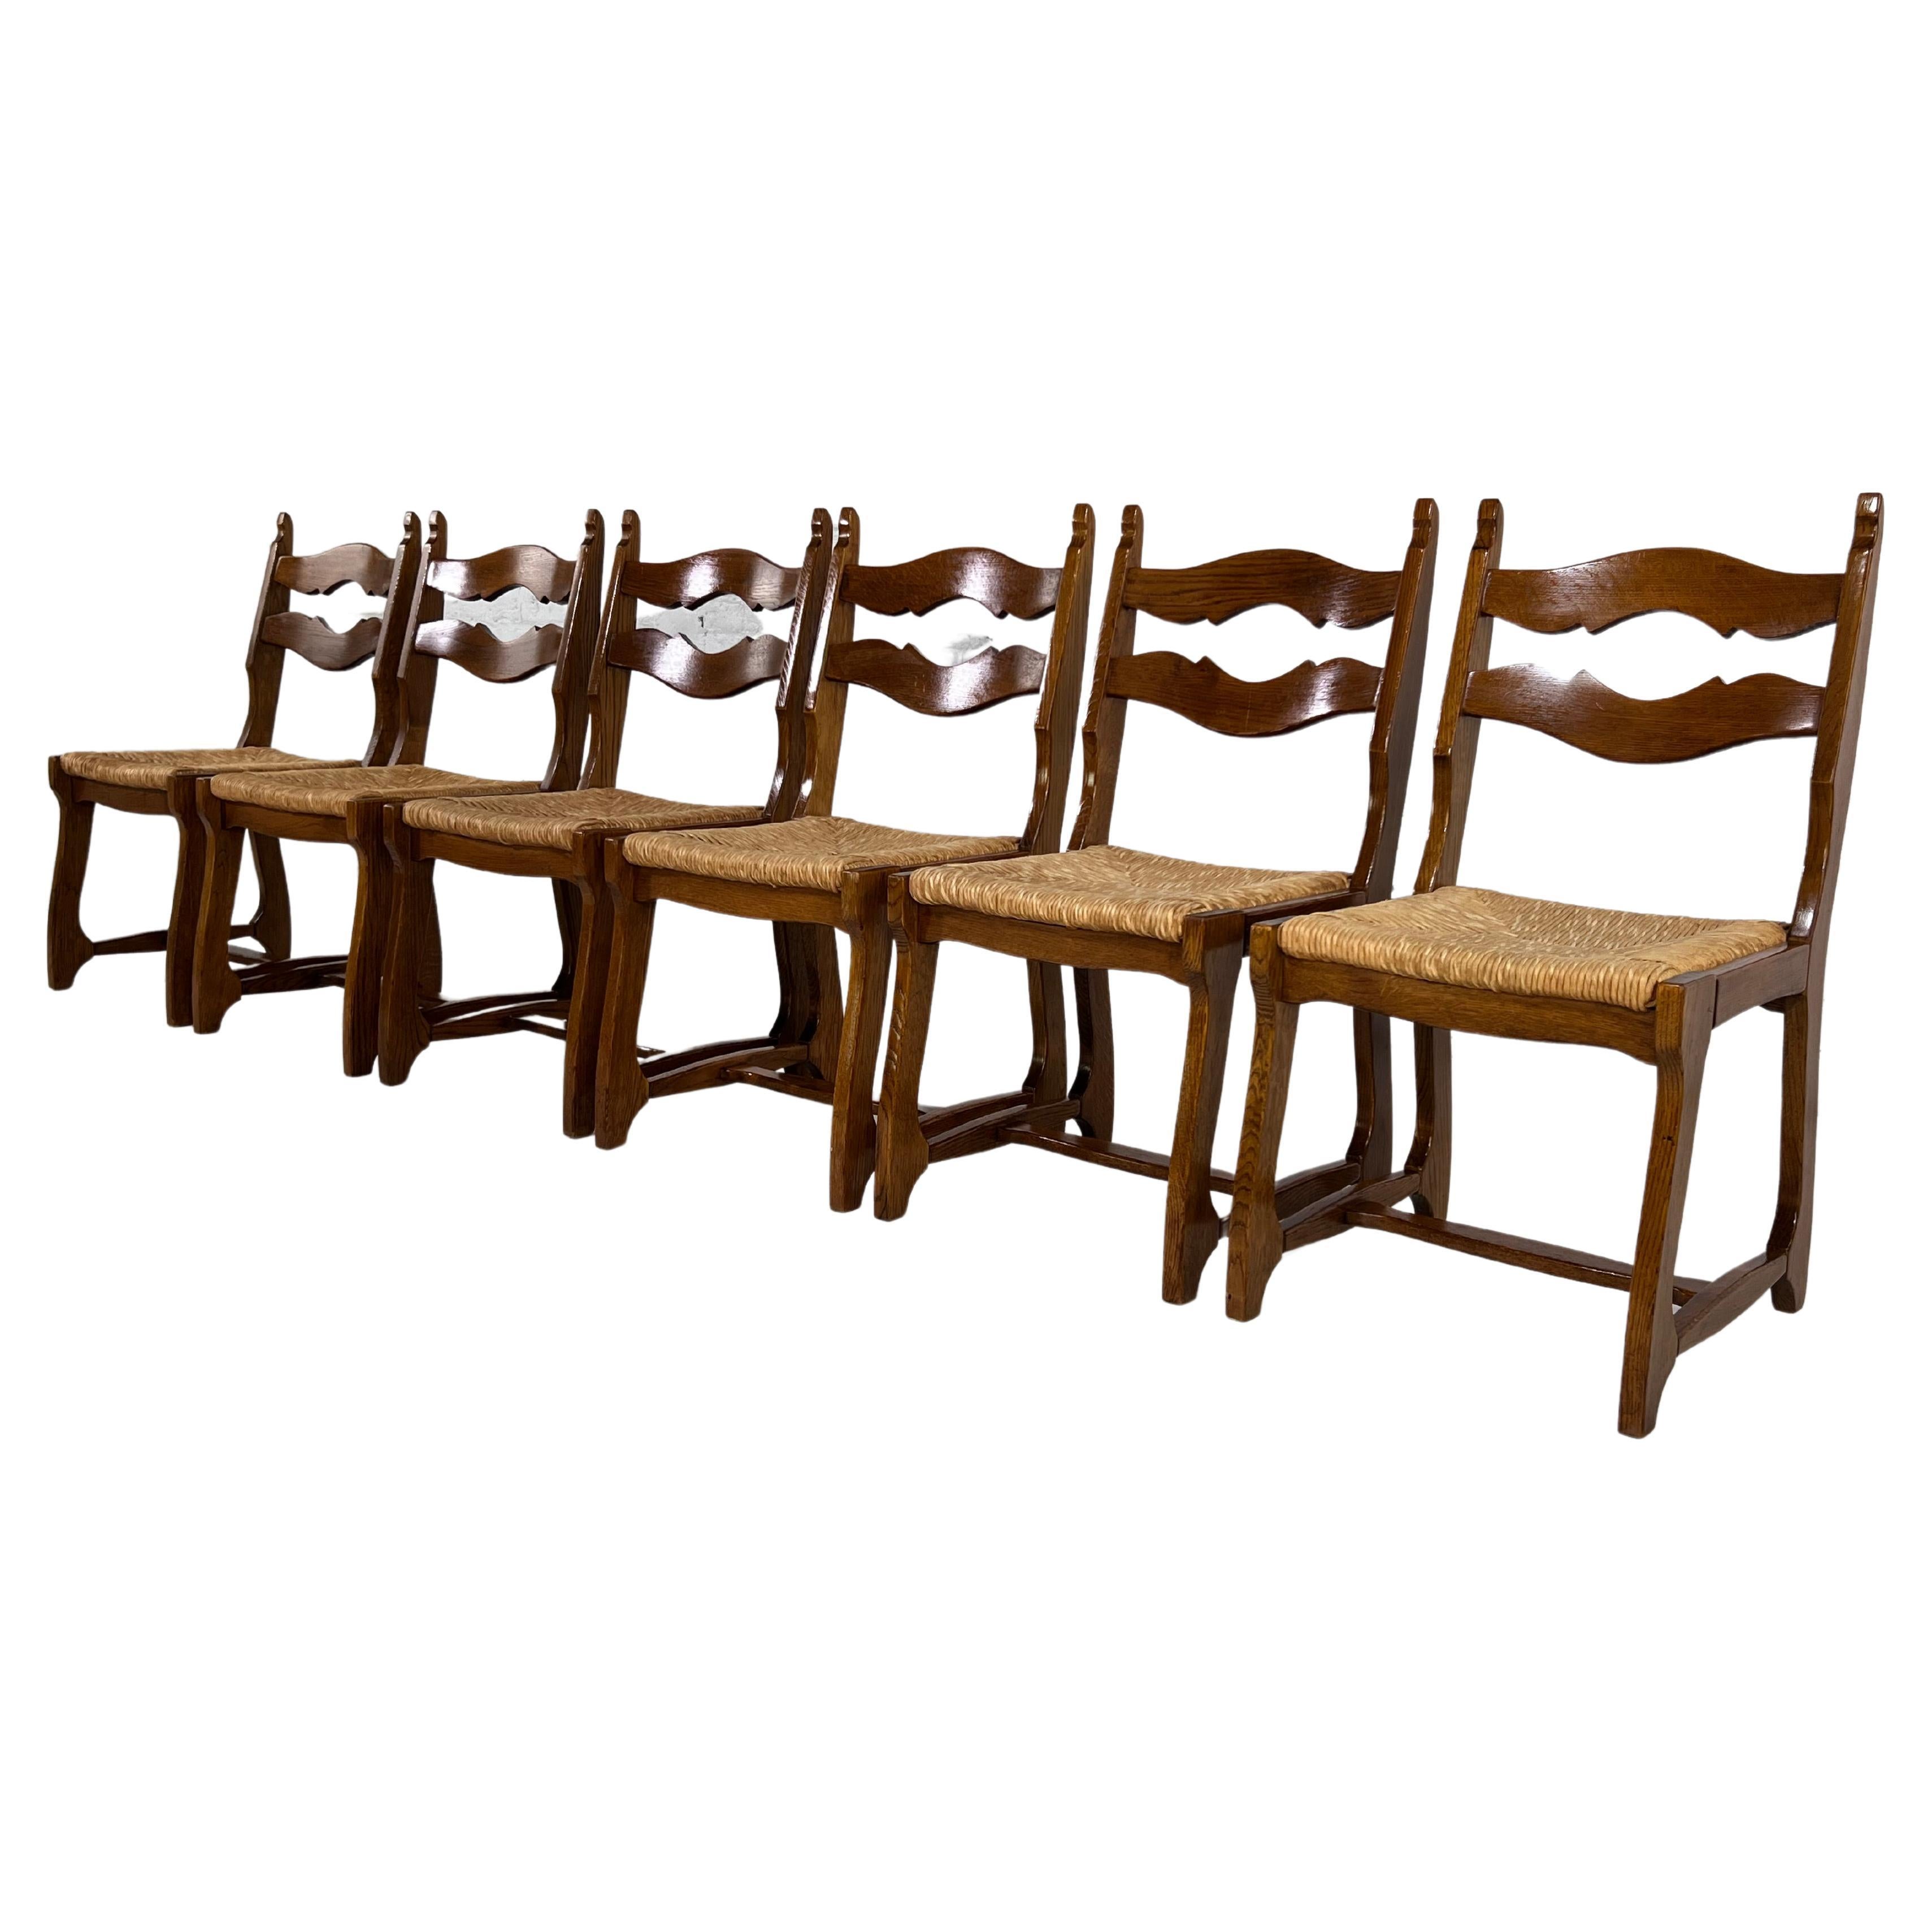 Chaises en bois de chêne et paille tressée Design des années 1950 Ensemble de 6 chaises